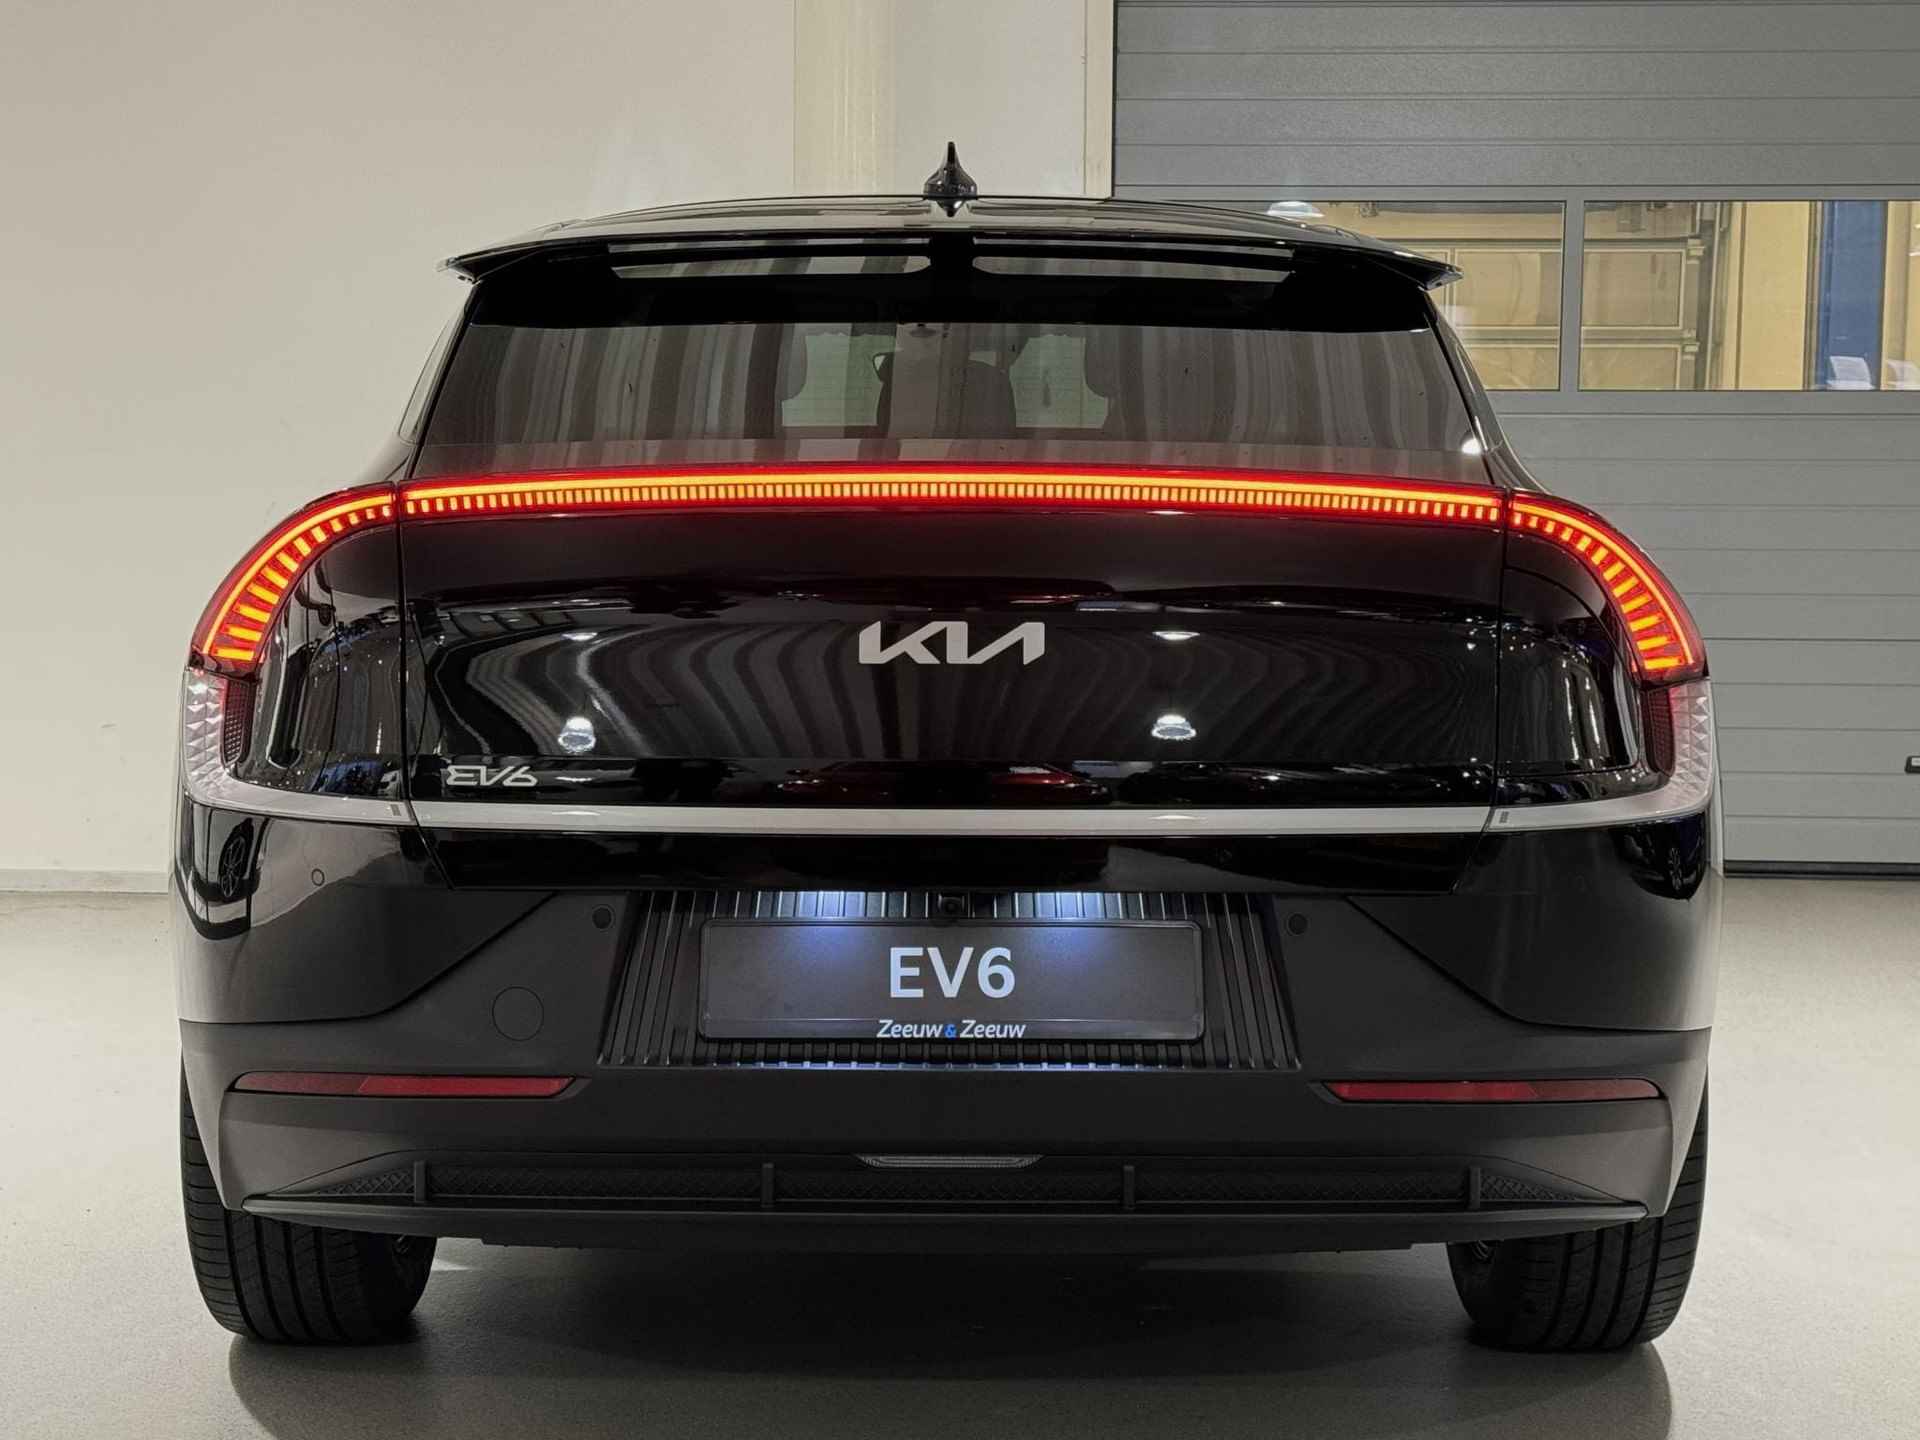 Kia EV6 Light Edition 58 kWh | €2.950,- overheidssubsidie + €2.950,- Kia subsidie! | €5.900,- voordeel! | Beperkte beschikbaarheid! | 180kW laadvermogen | 394 km WLTP-actieradius | Stoel-/stuurverwarming - 7/36